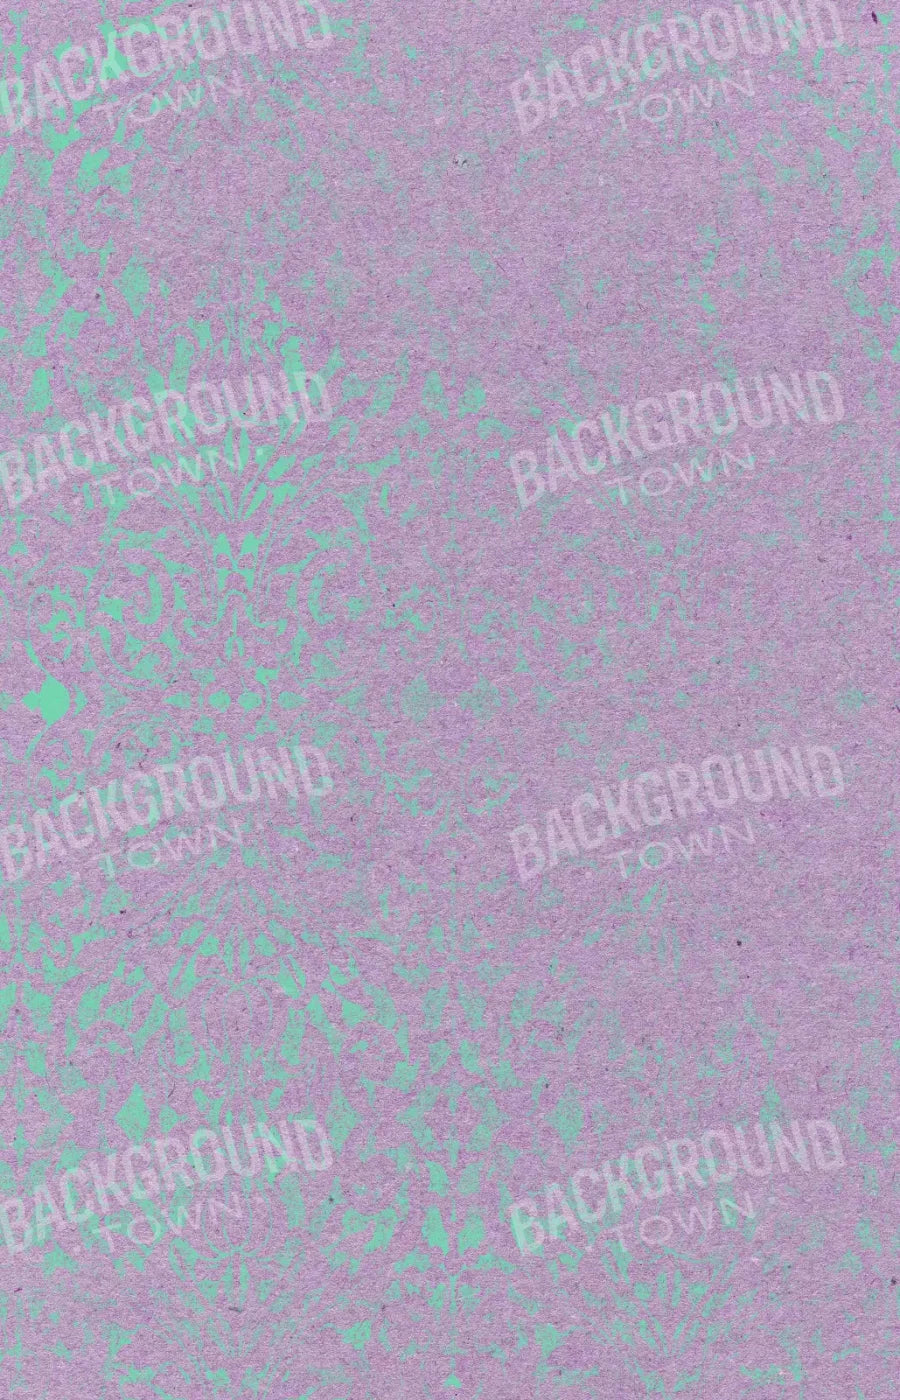 Alexandria 8X12 Ultracloth ( 96 X 144 Inch ) Backdrop